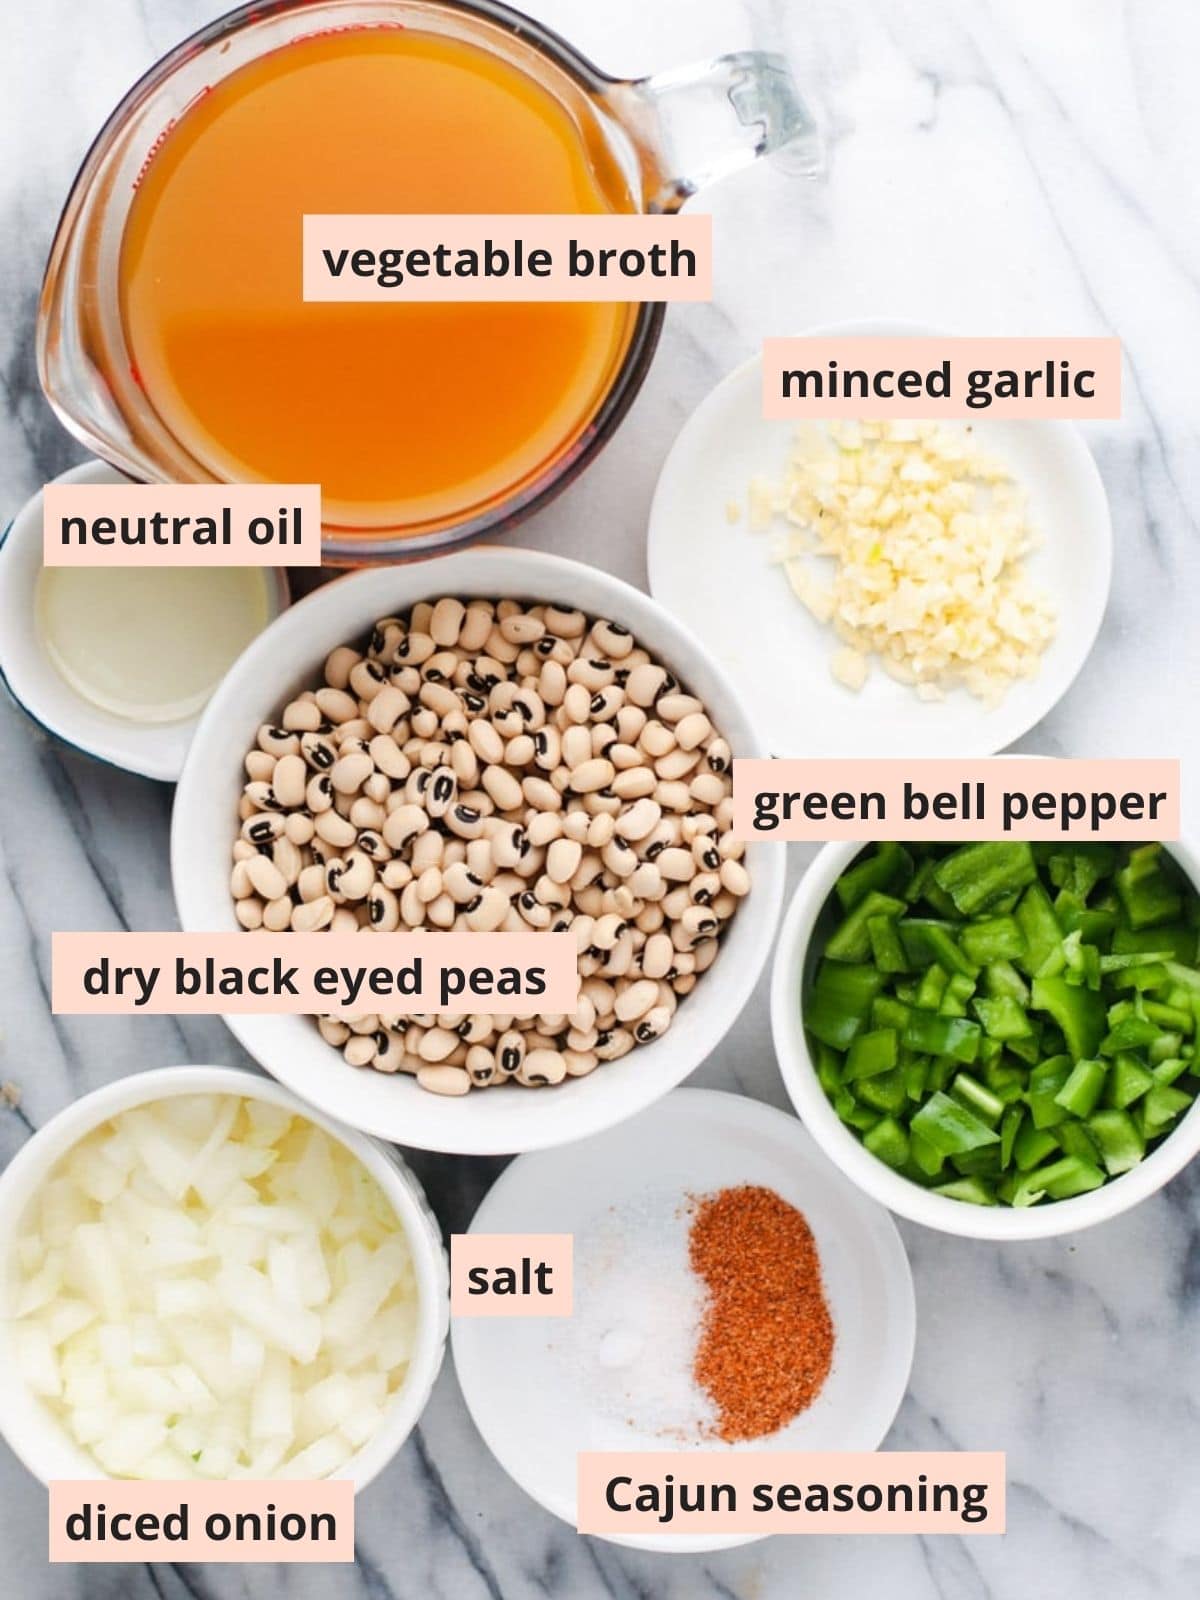 Labeled ingredients used to make black eyed peas.